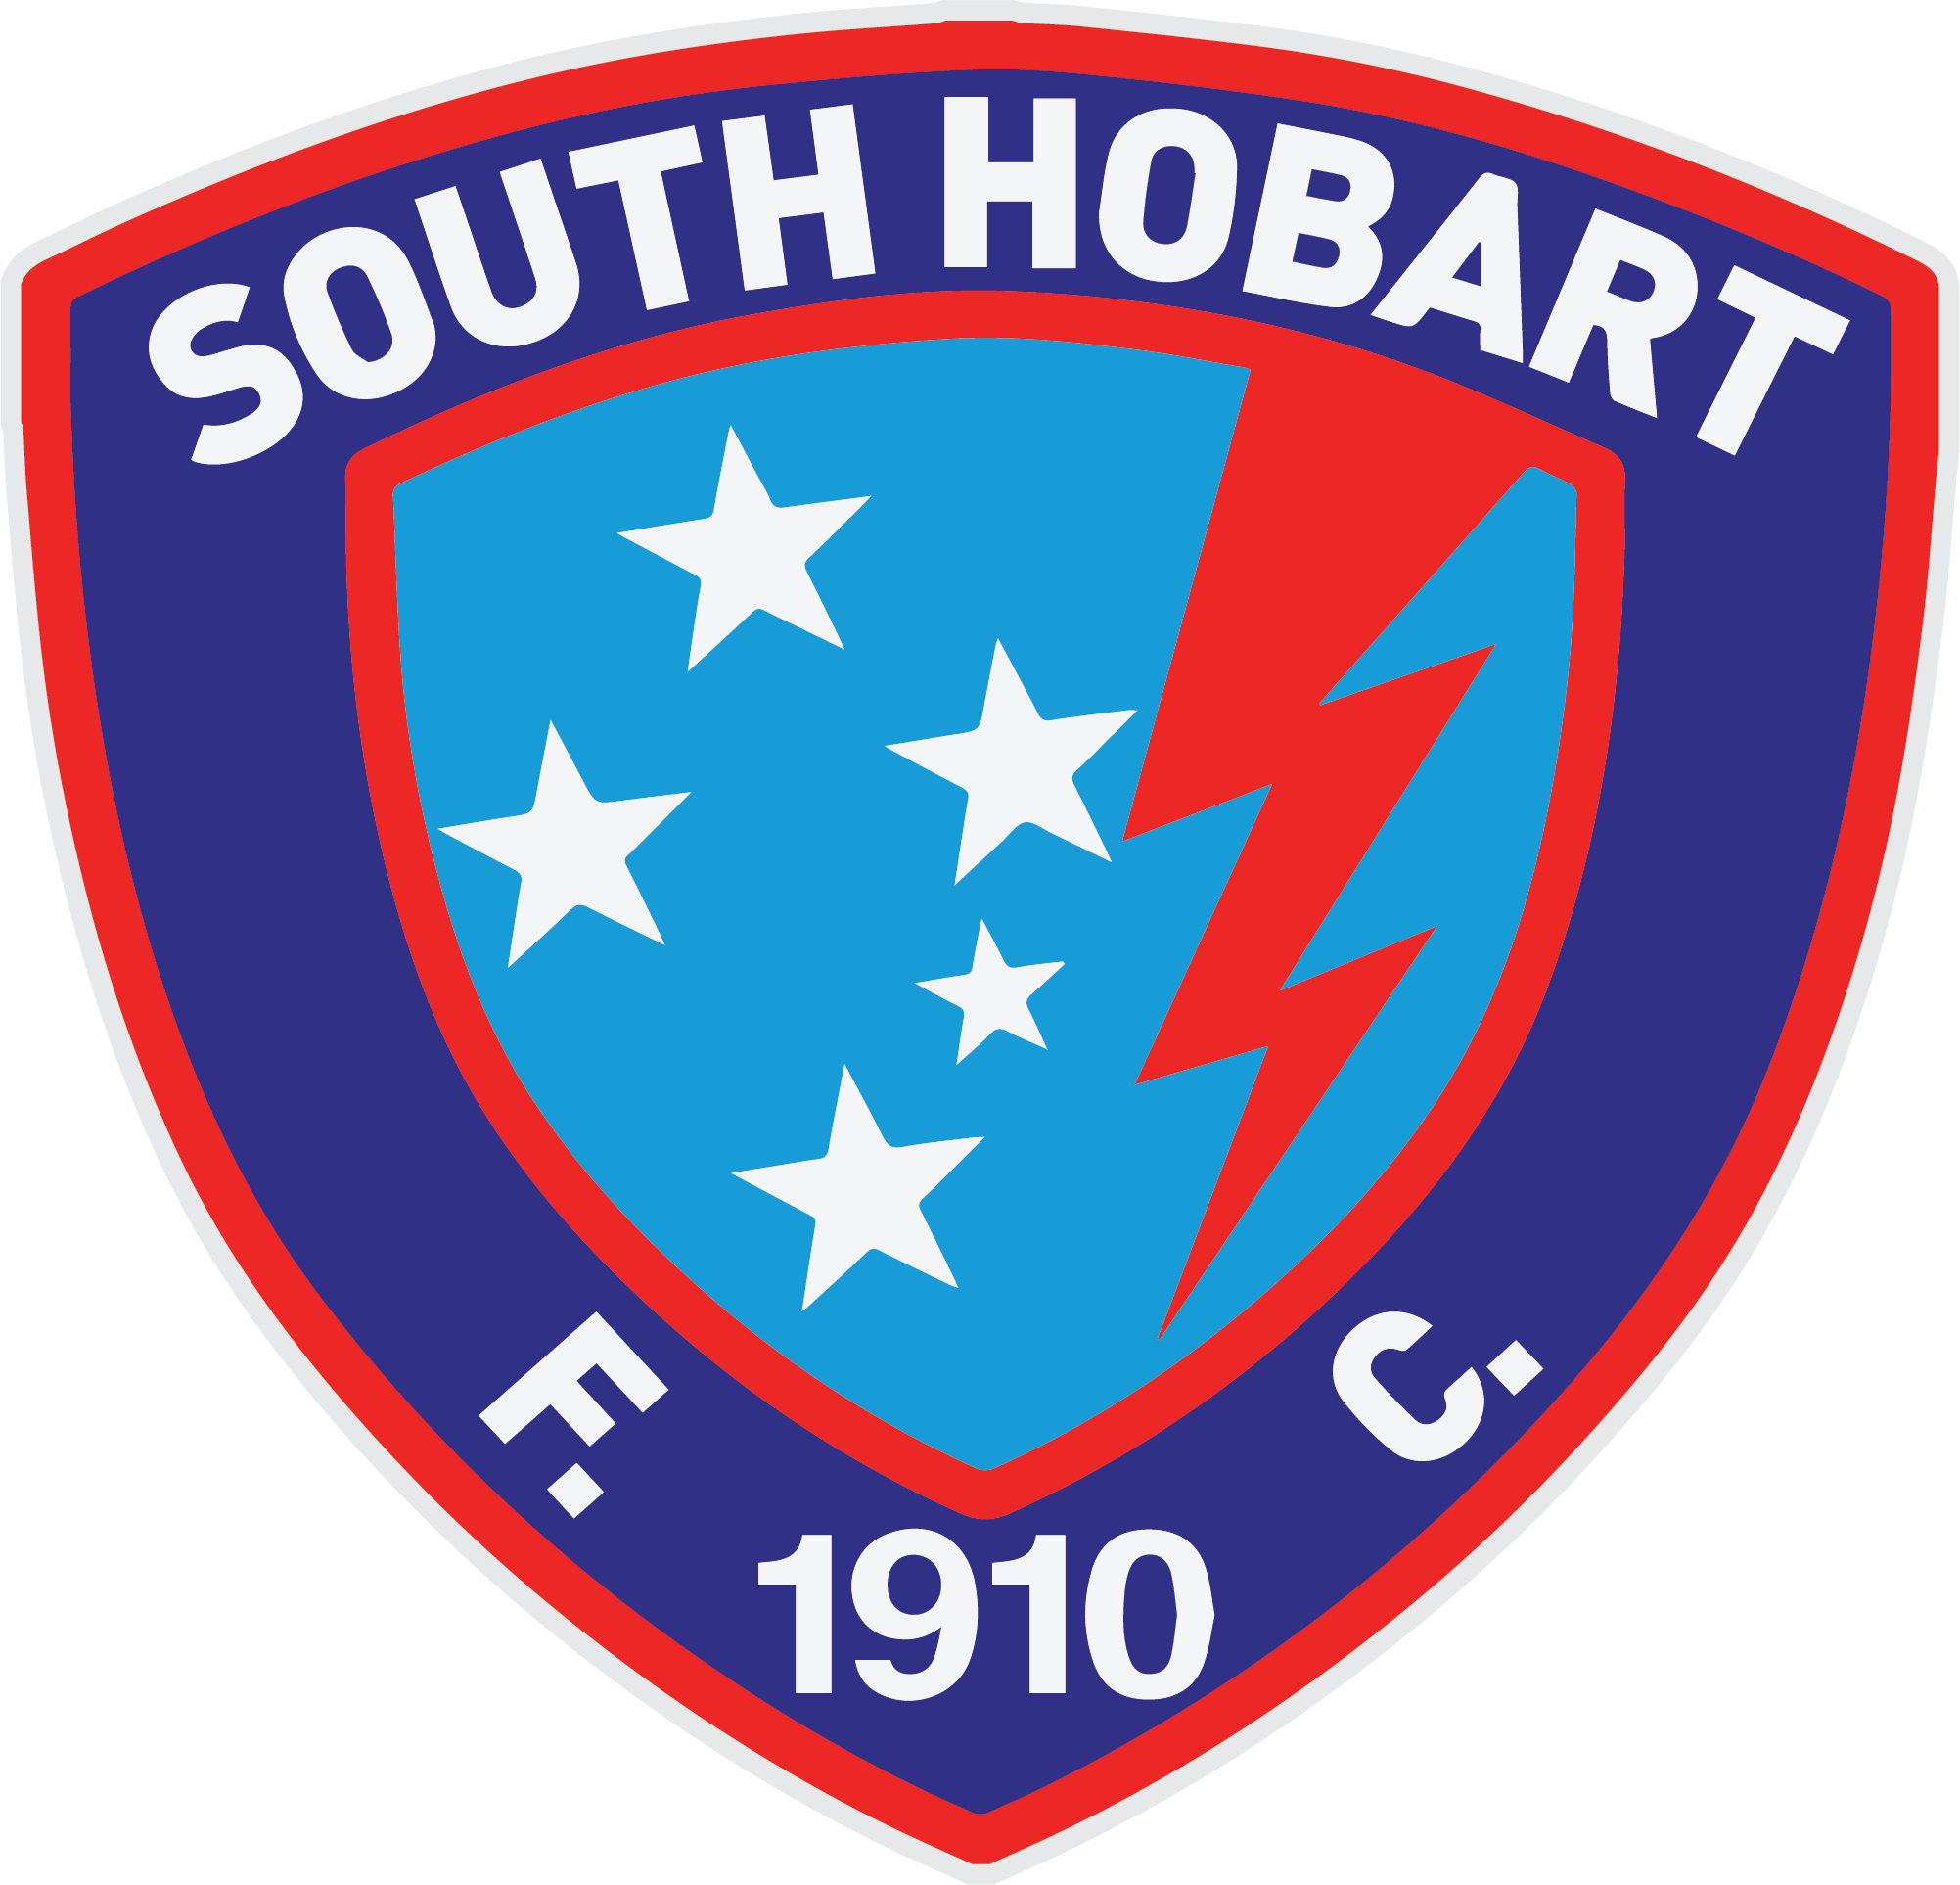 South Hobart (W)